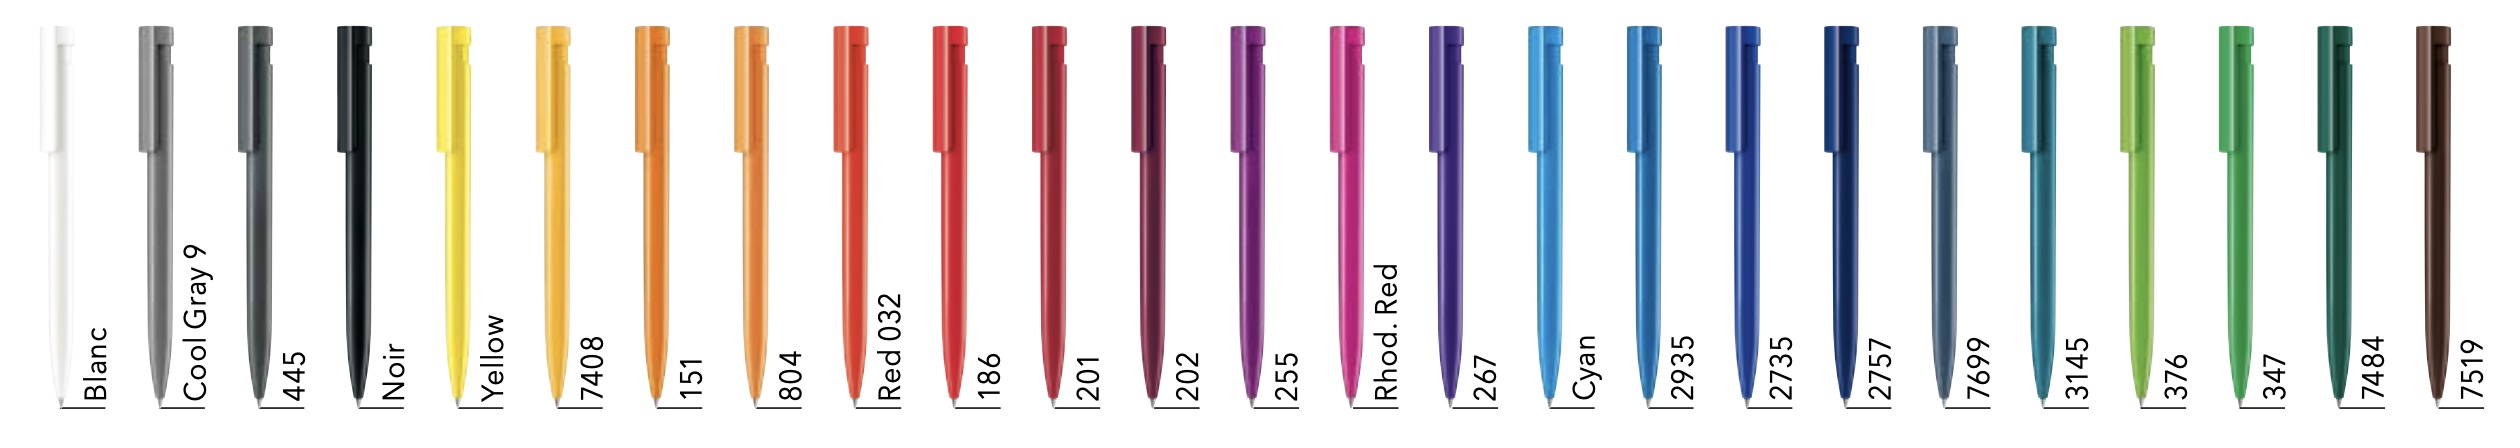 La gamme de couleurs de nos stylos